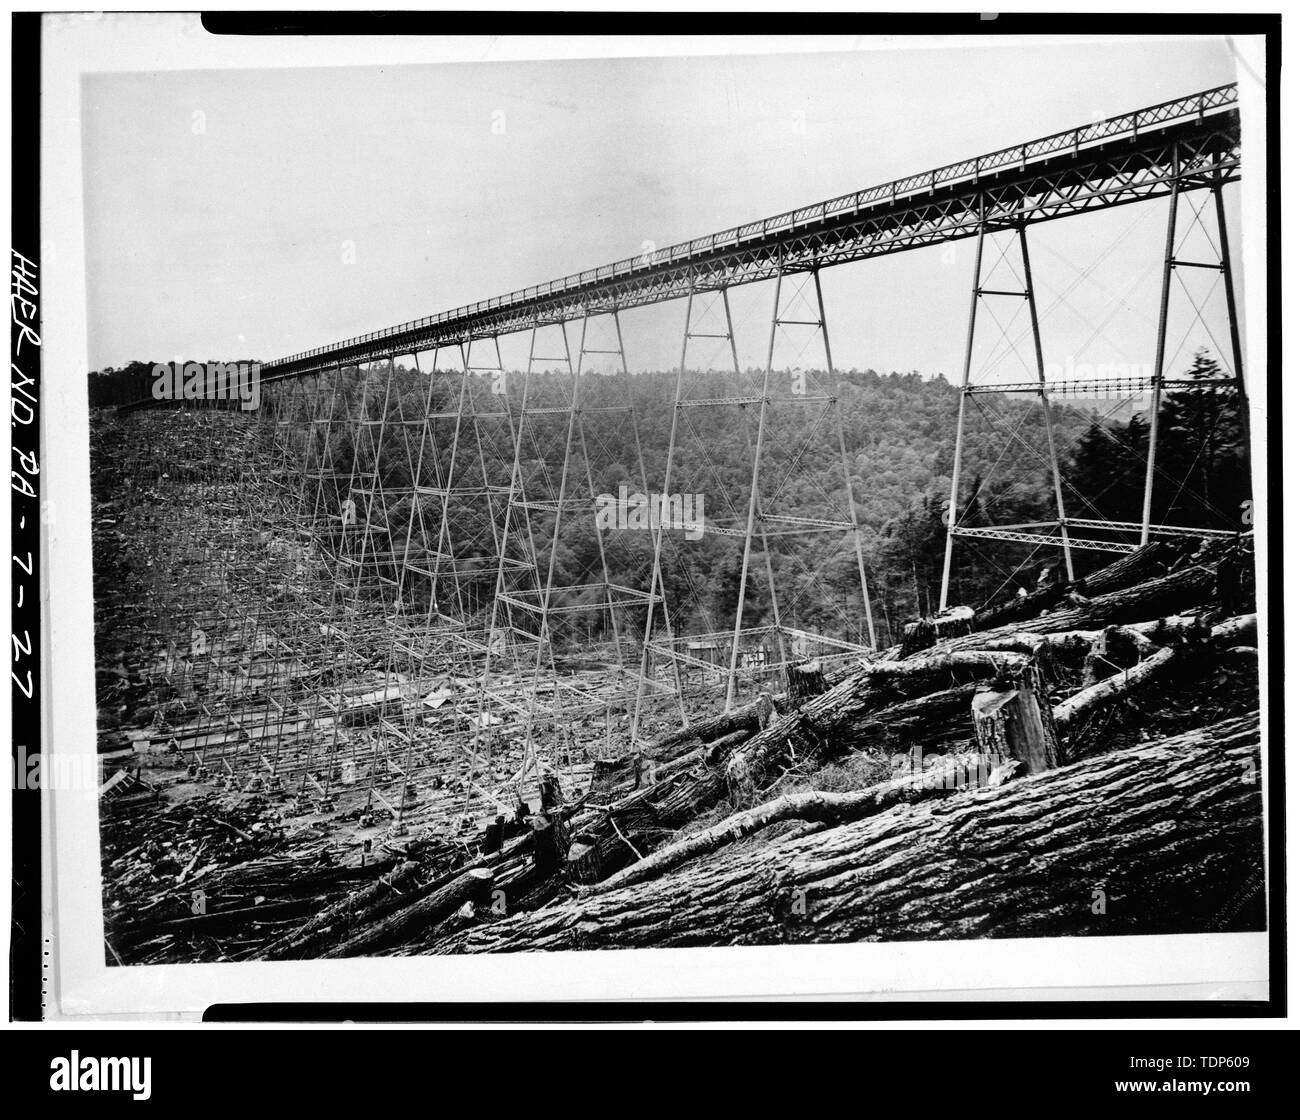 Fotocopiata 1982 da Erie Azienda ferroviaria file. KINZUA ORIGINALE viadotto, prima del 1900 la ricostruzione - Ferrovia Erie, Divisione di Bradford, ponte 27.66, Spanning Kinzua Creek Valley, 1.5 miglia a nordest di Kushequa, Mount Jewett, McKean County, PA; Kinzua Bridge - ex Erie Railroad bridge spanning Kinzua Creek Valley, in McKean County, Pennsylvania. Immagine (c.1890s): HAER-storico di ingegneria americana di registrare immagini di Pennsylvania. Foto Stock